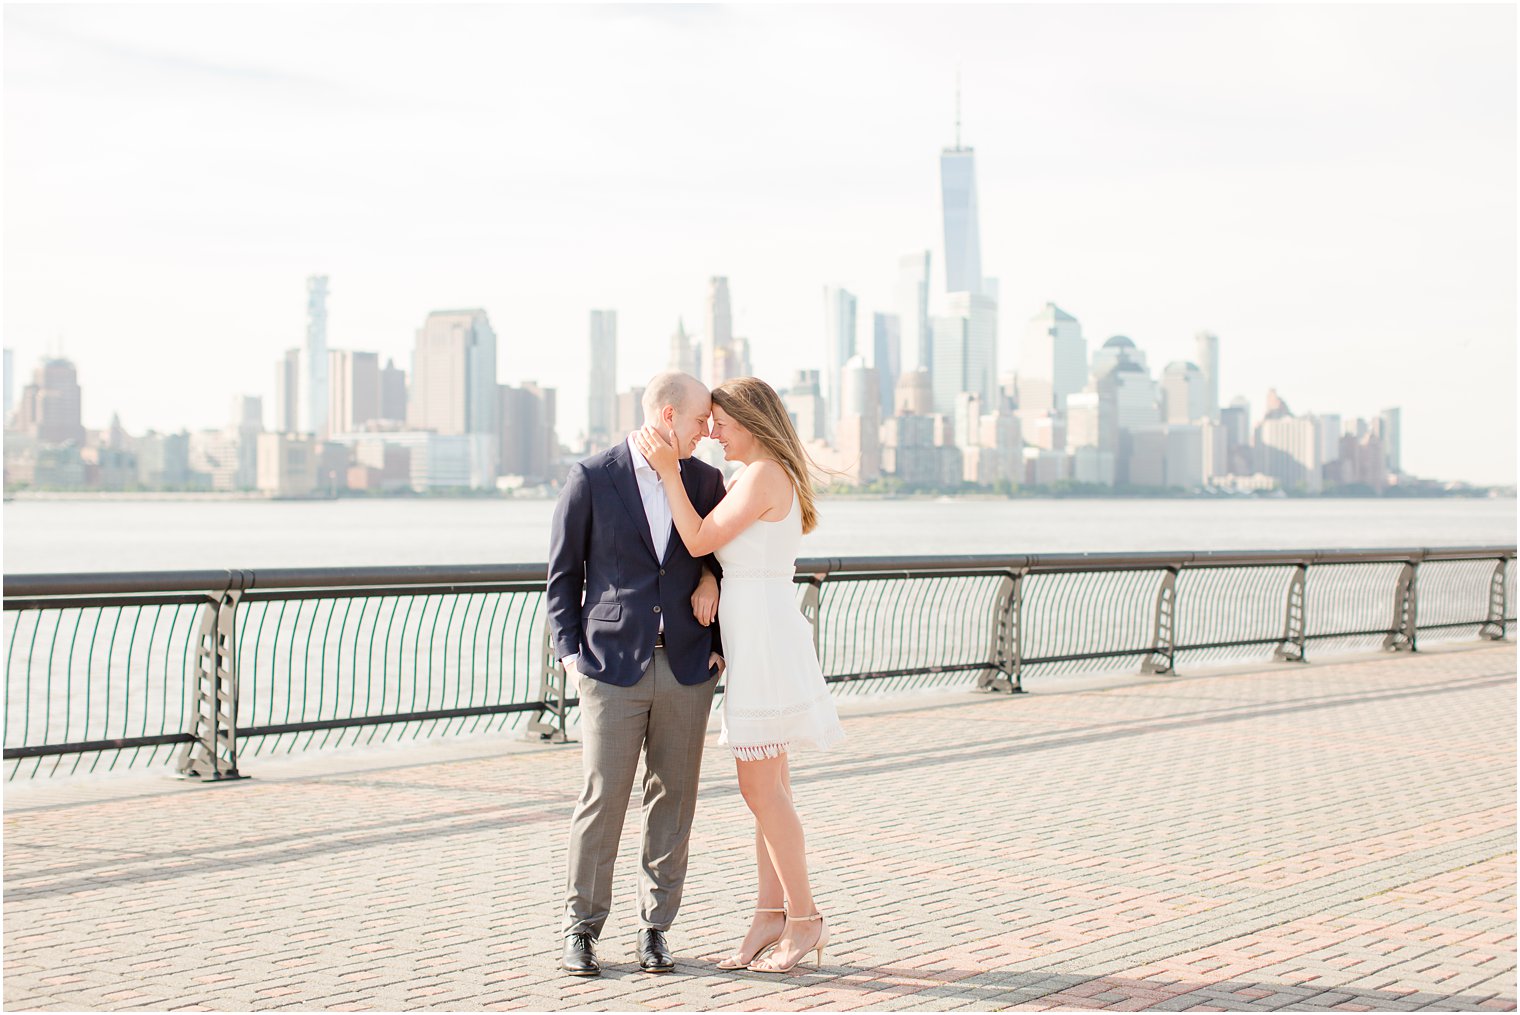 Hoboken Engagement Session by NJ Wedding Photographers Idalia Photography